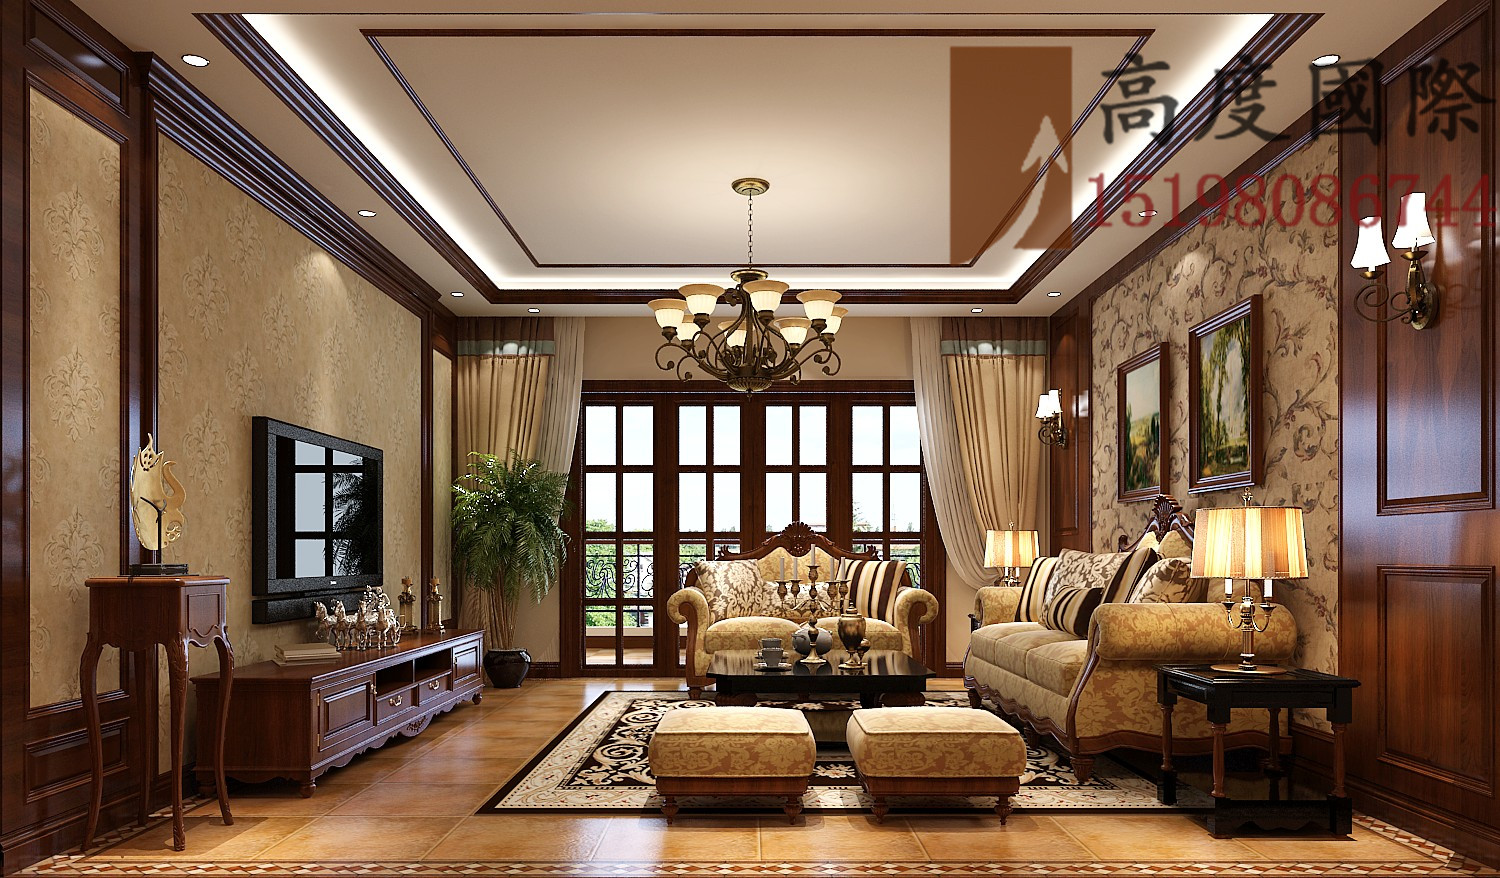 公寓 美式风格 客厅图片来自bfsdbfd在美式风格.的分享